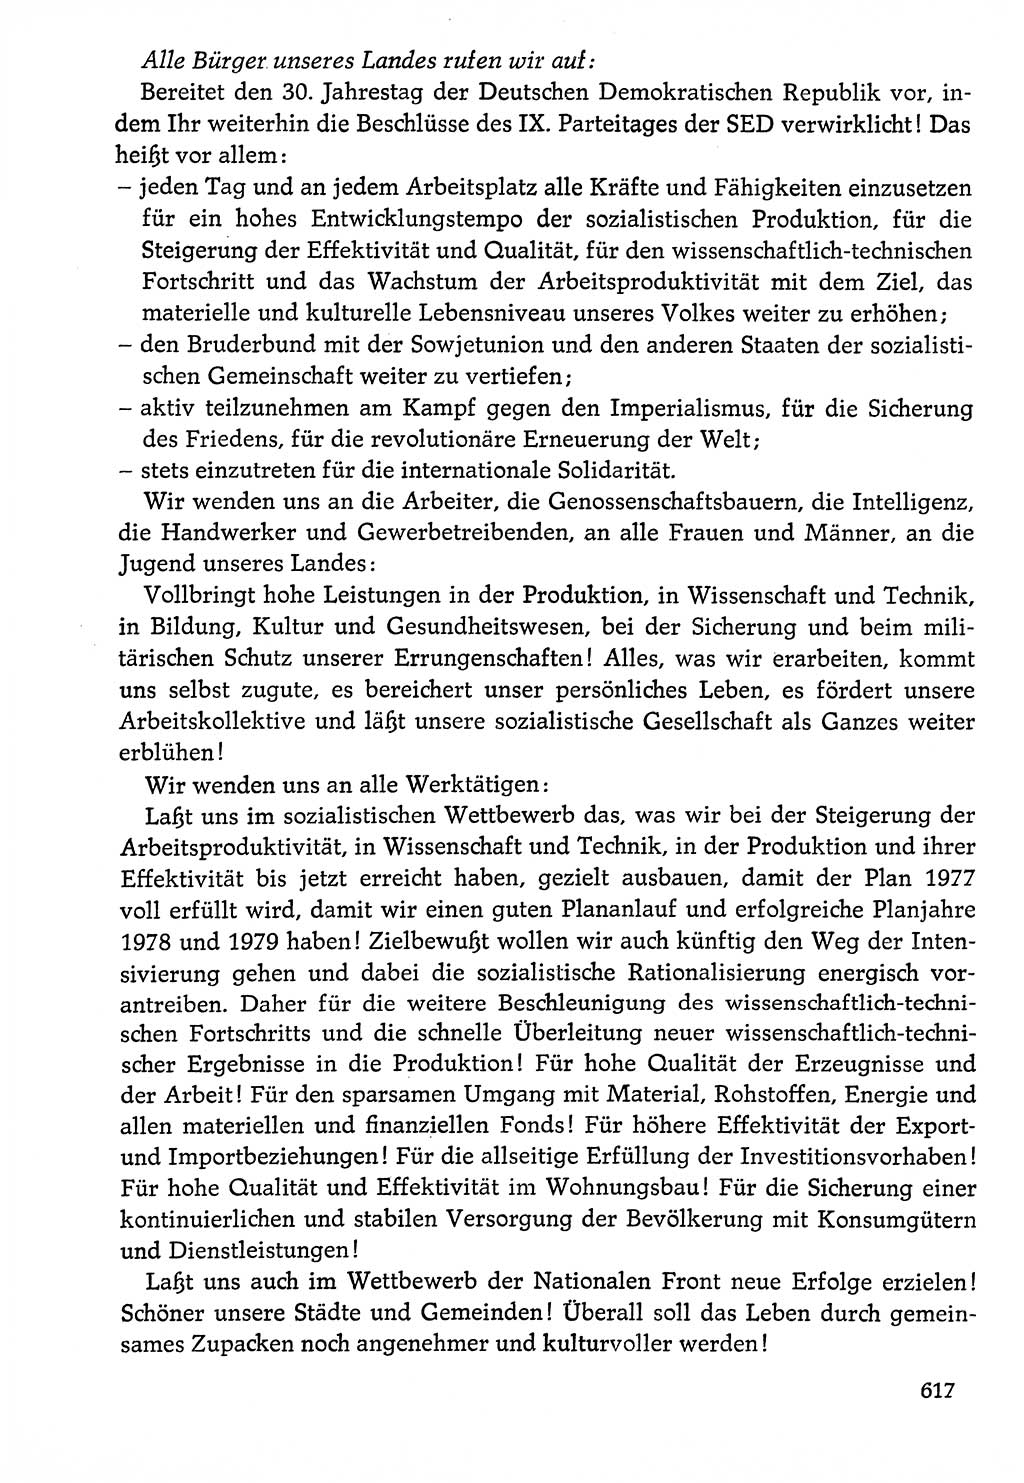 Dokumente der Sozialistischen Einheitspartei Deutschlands (SED) [Deutsche Demokratische Republik (DDR)] 1976-1977, Seite 617 (Dok. SED DDR 1976-1977, S. 617)